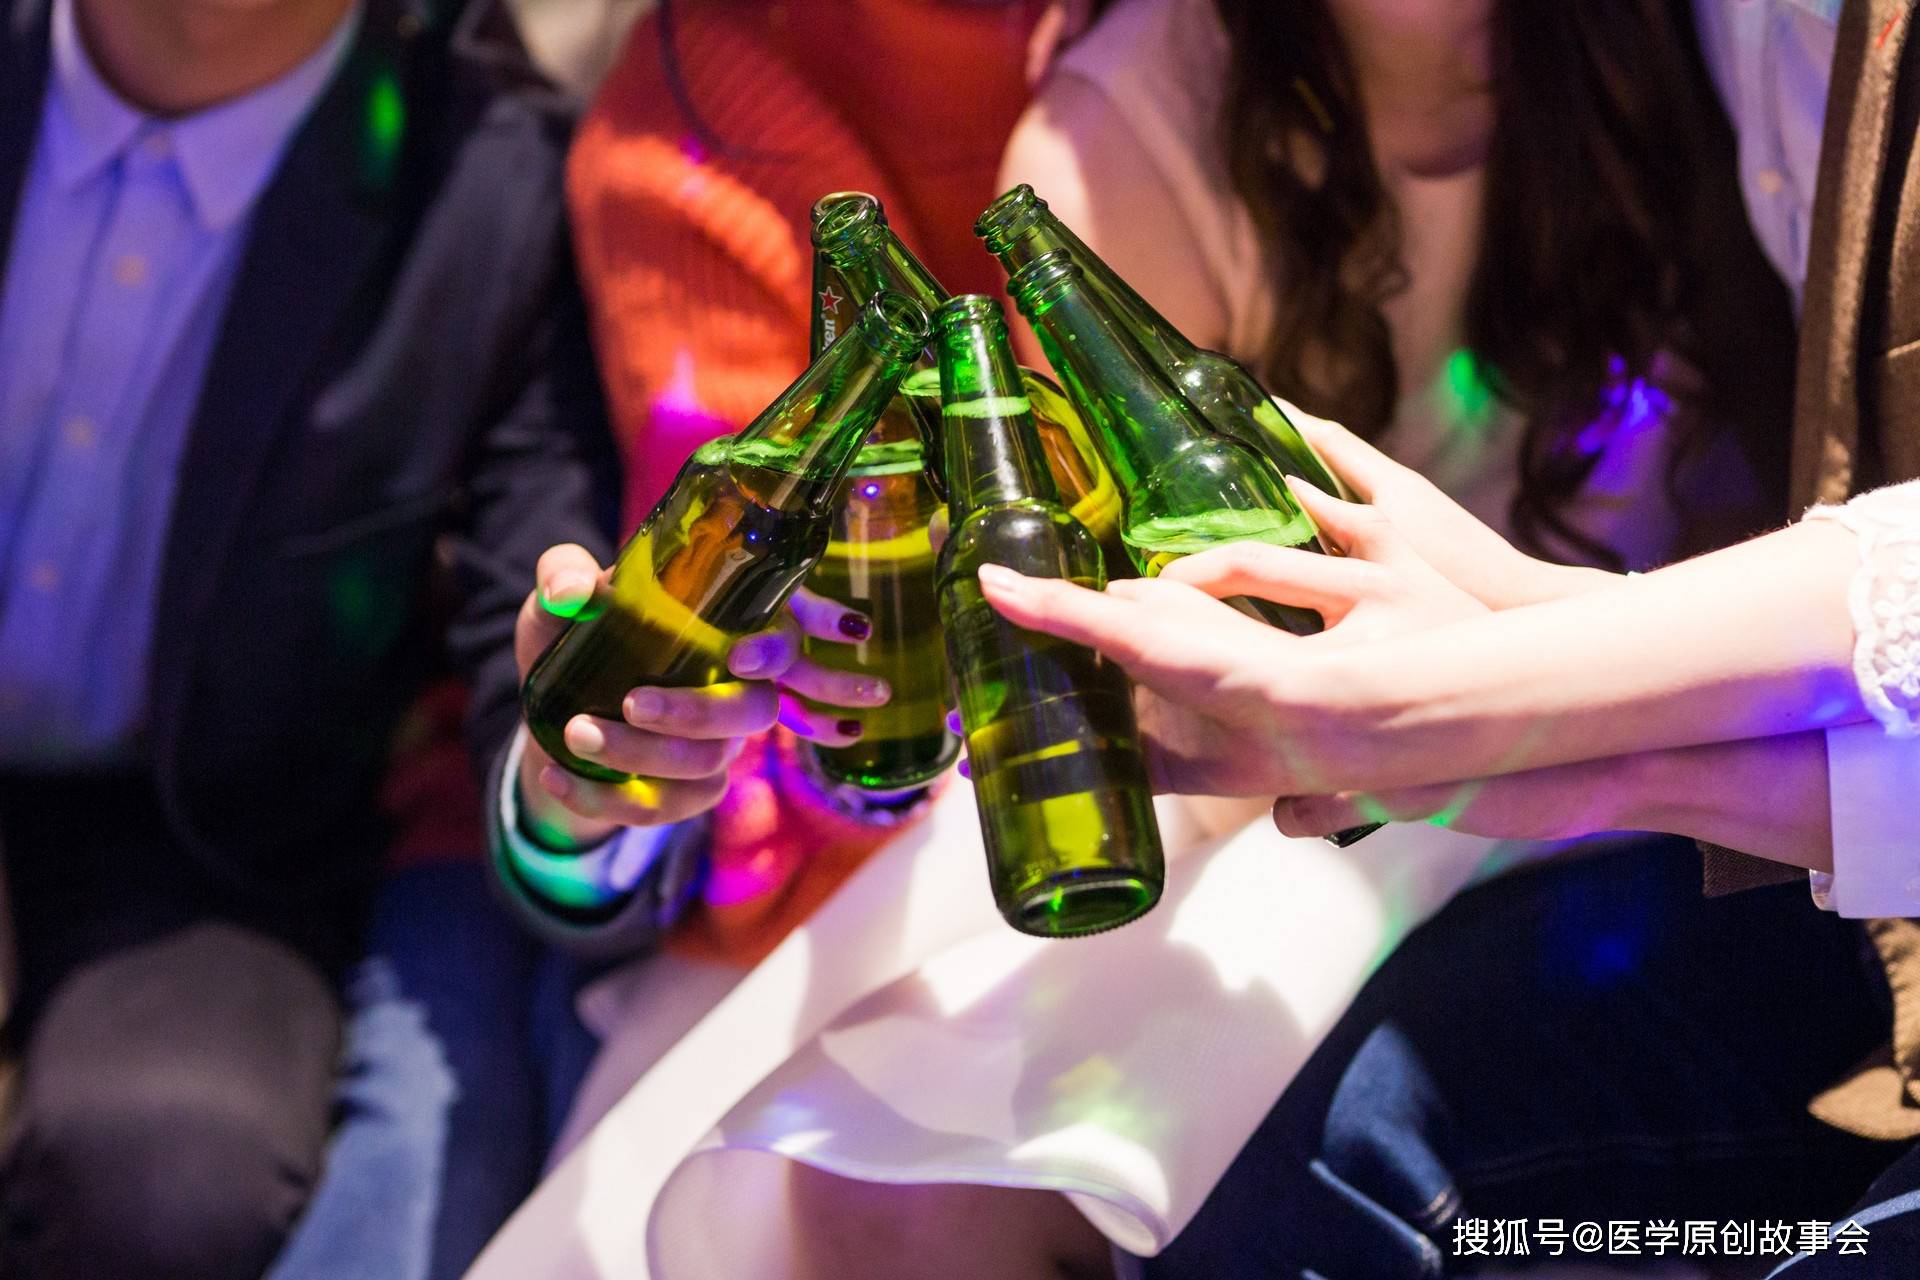 壽命短的人，喝酒後會有五個特徵，無論出現幾個，提示該戒酒了